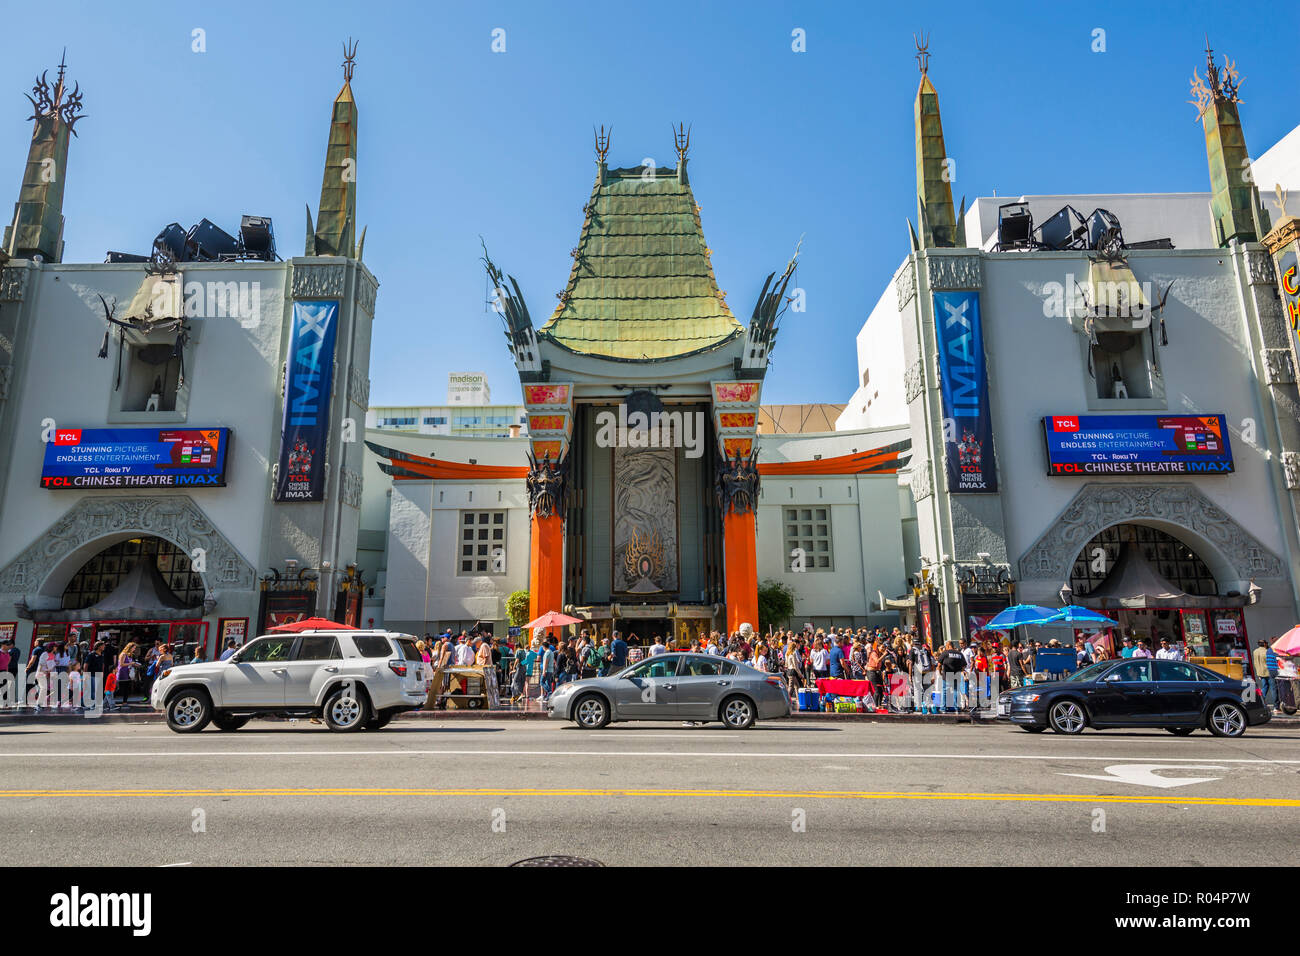 Avis de Grauman's Chinese Theatre sur Hollywood Boulevard, Hollywood, Los Angeles, Californie, États-Unis d'Amérique, Amérique du Nord Banque D'Images